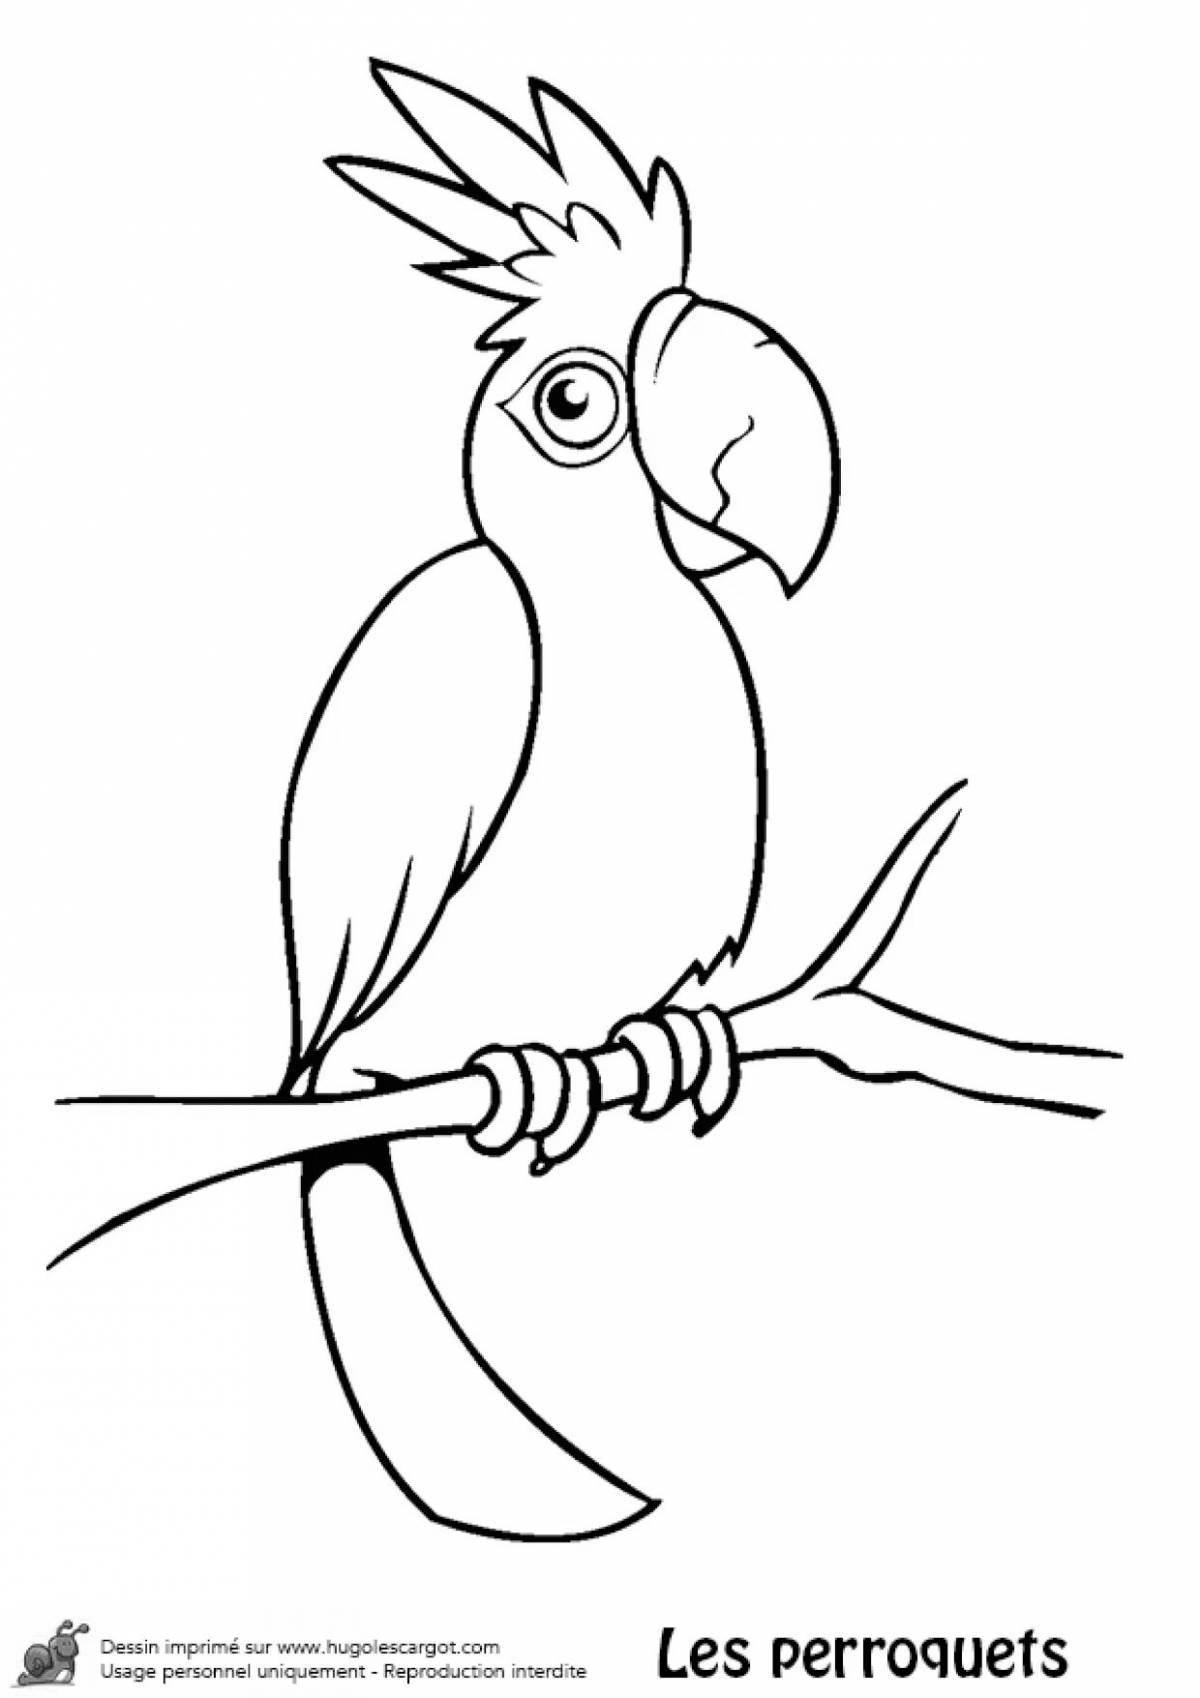 Раскраска волшебный попугай для детей 6-7 лет